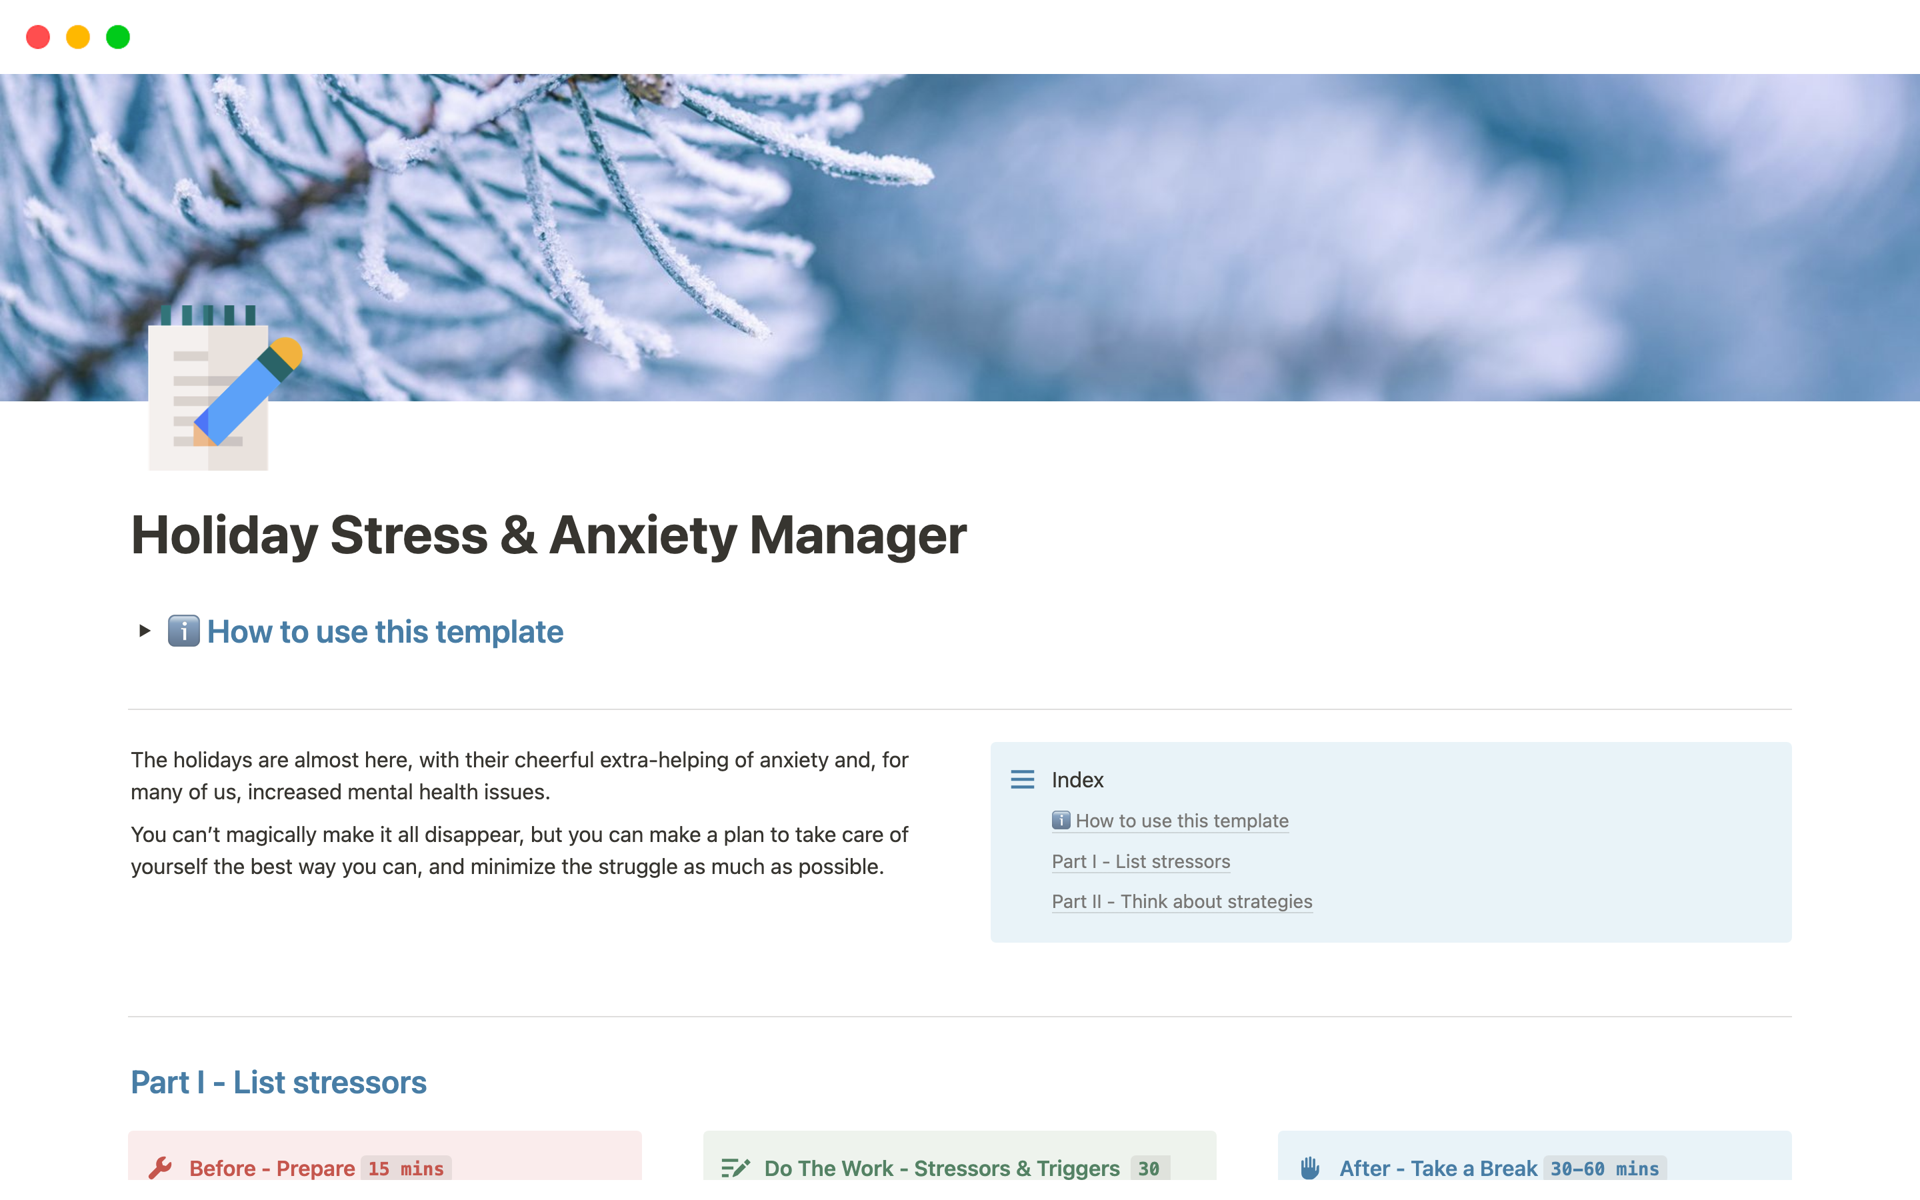 Aperçu du modèle de Holiday Stress & Anxiety Manager